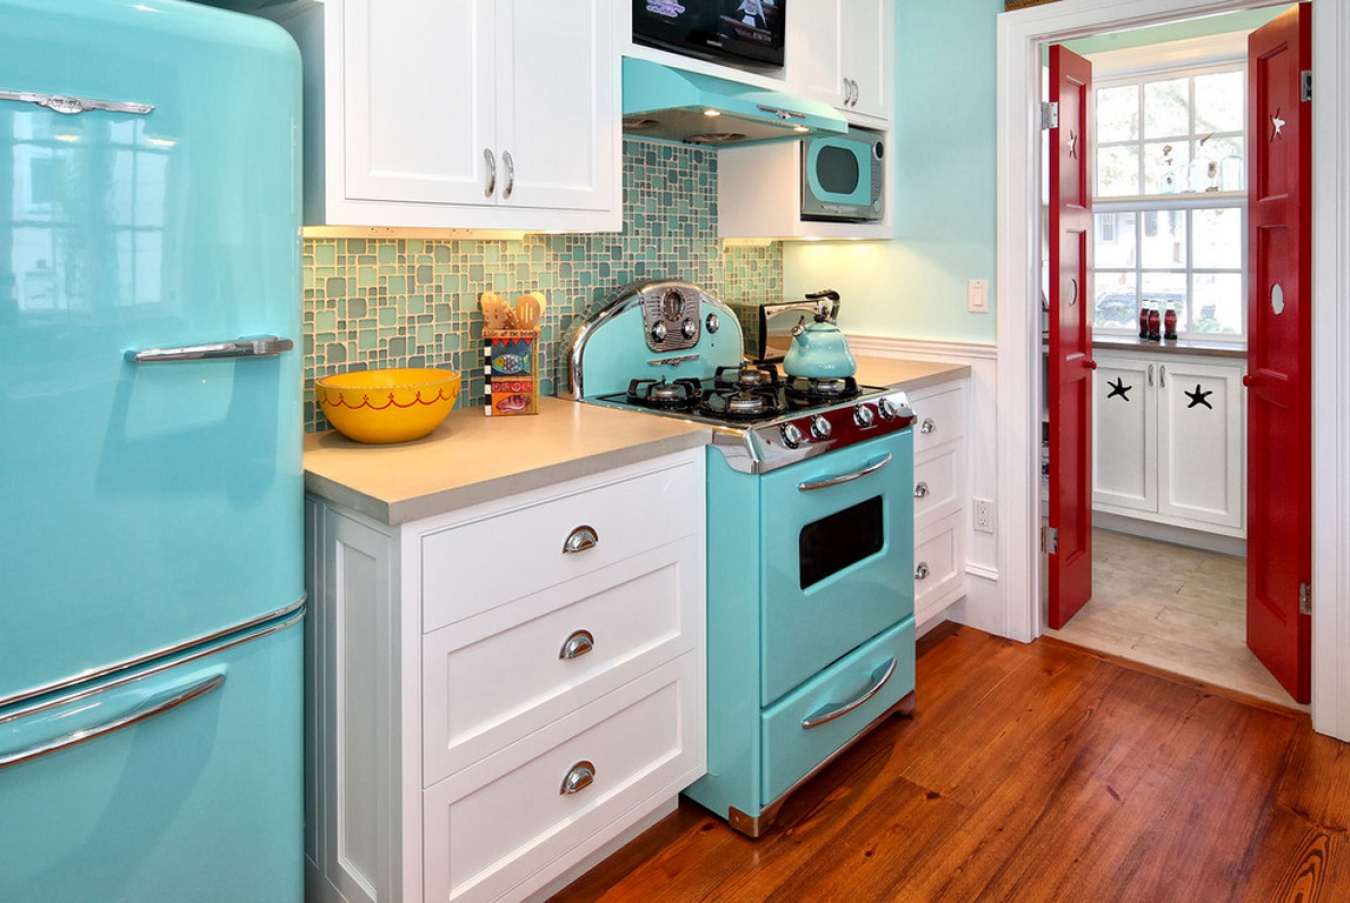 veliki hladnjak u unutrašnjosti kuhinje u sivoj boji